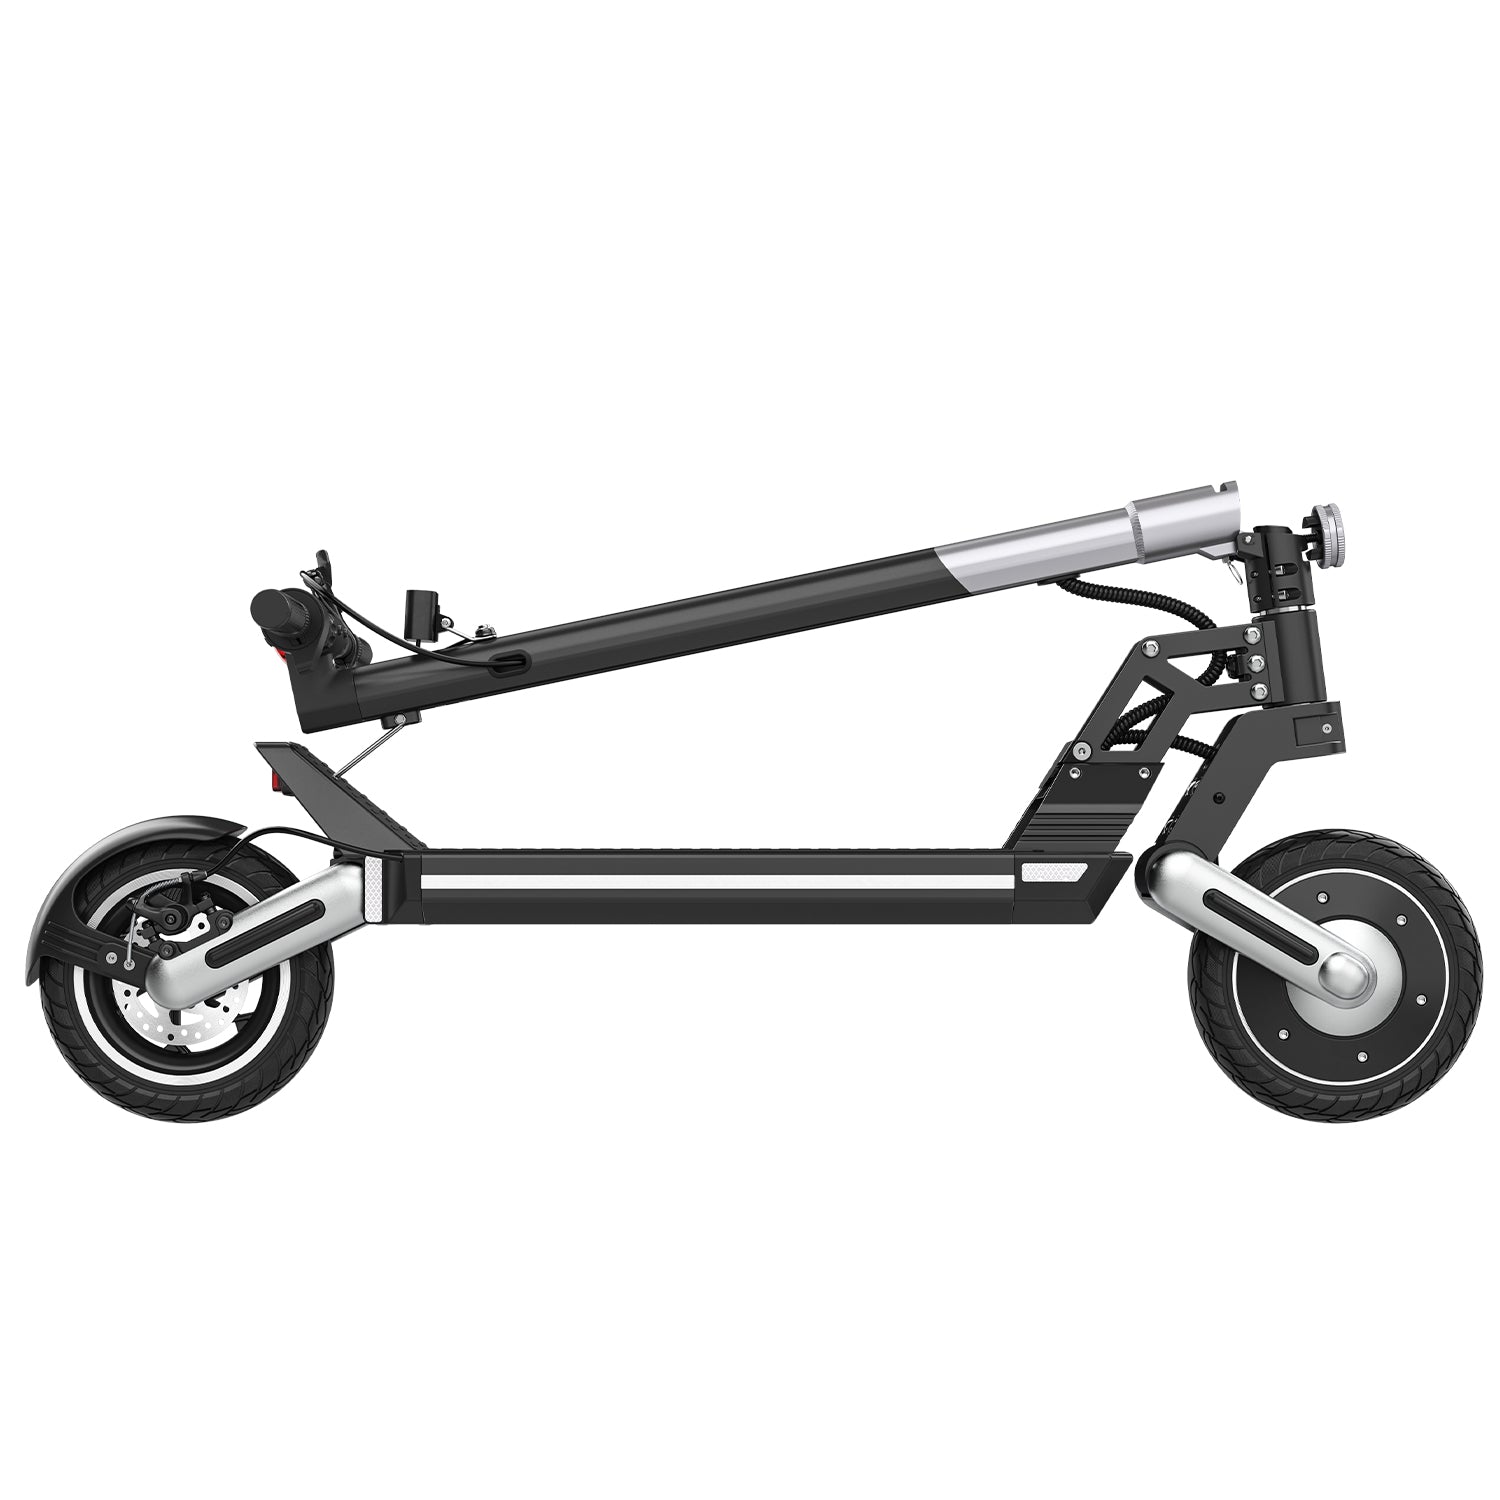 IENYRID M8 500W moteur 10 pouces scooter électrique tout-terrain batterie 10Ah